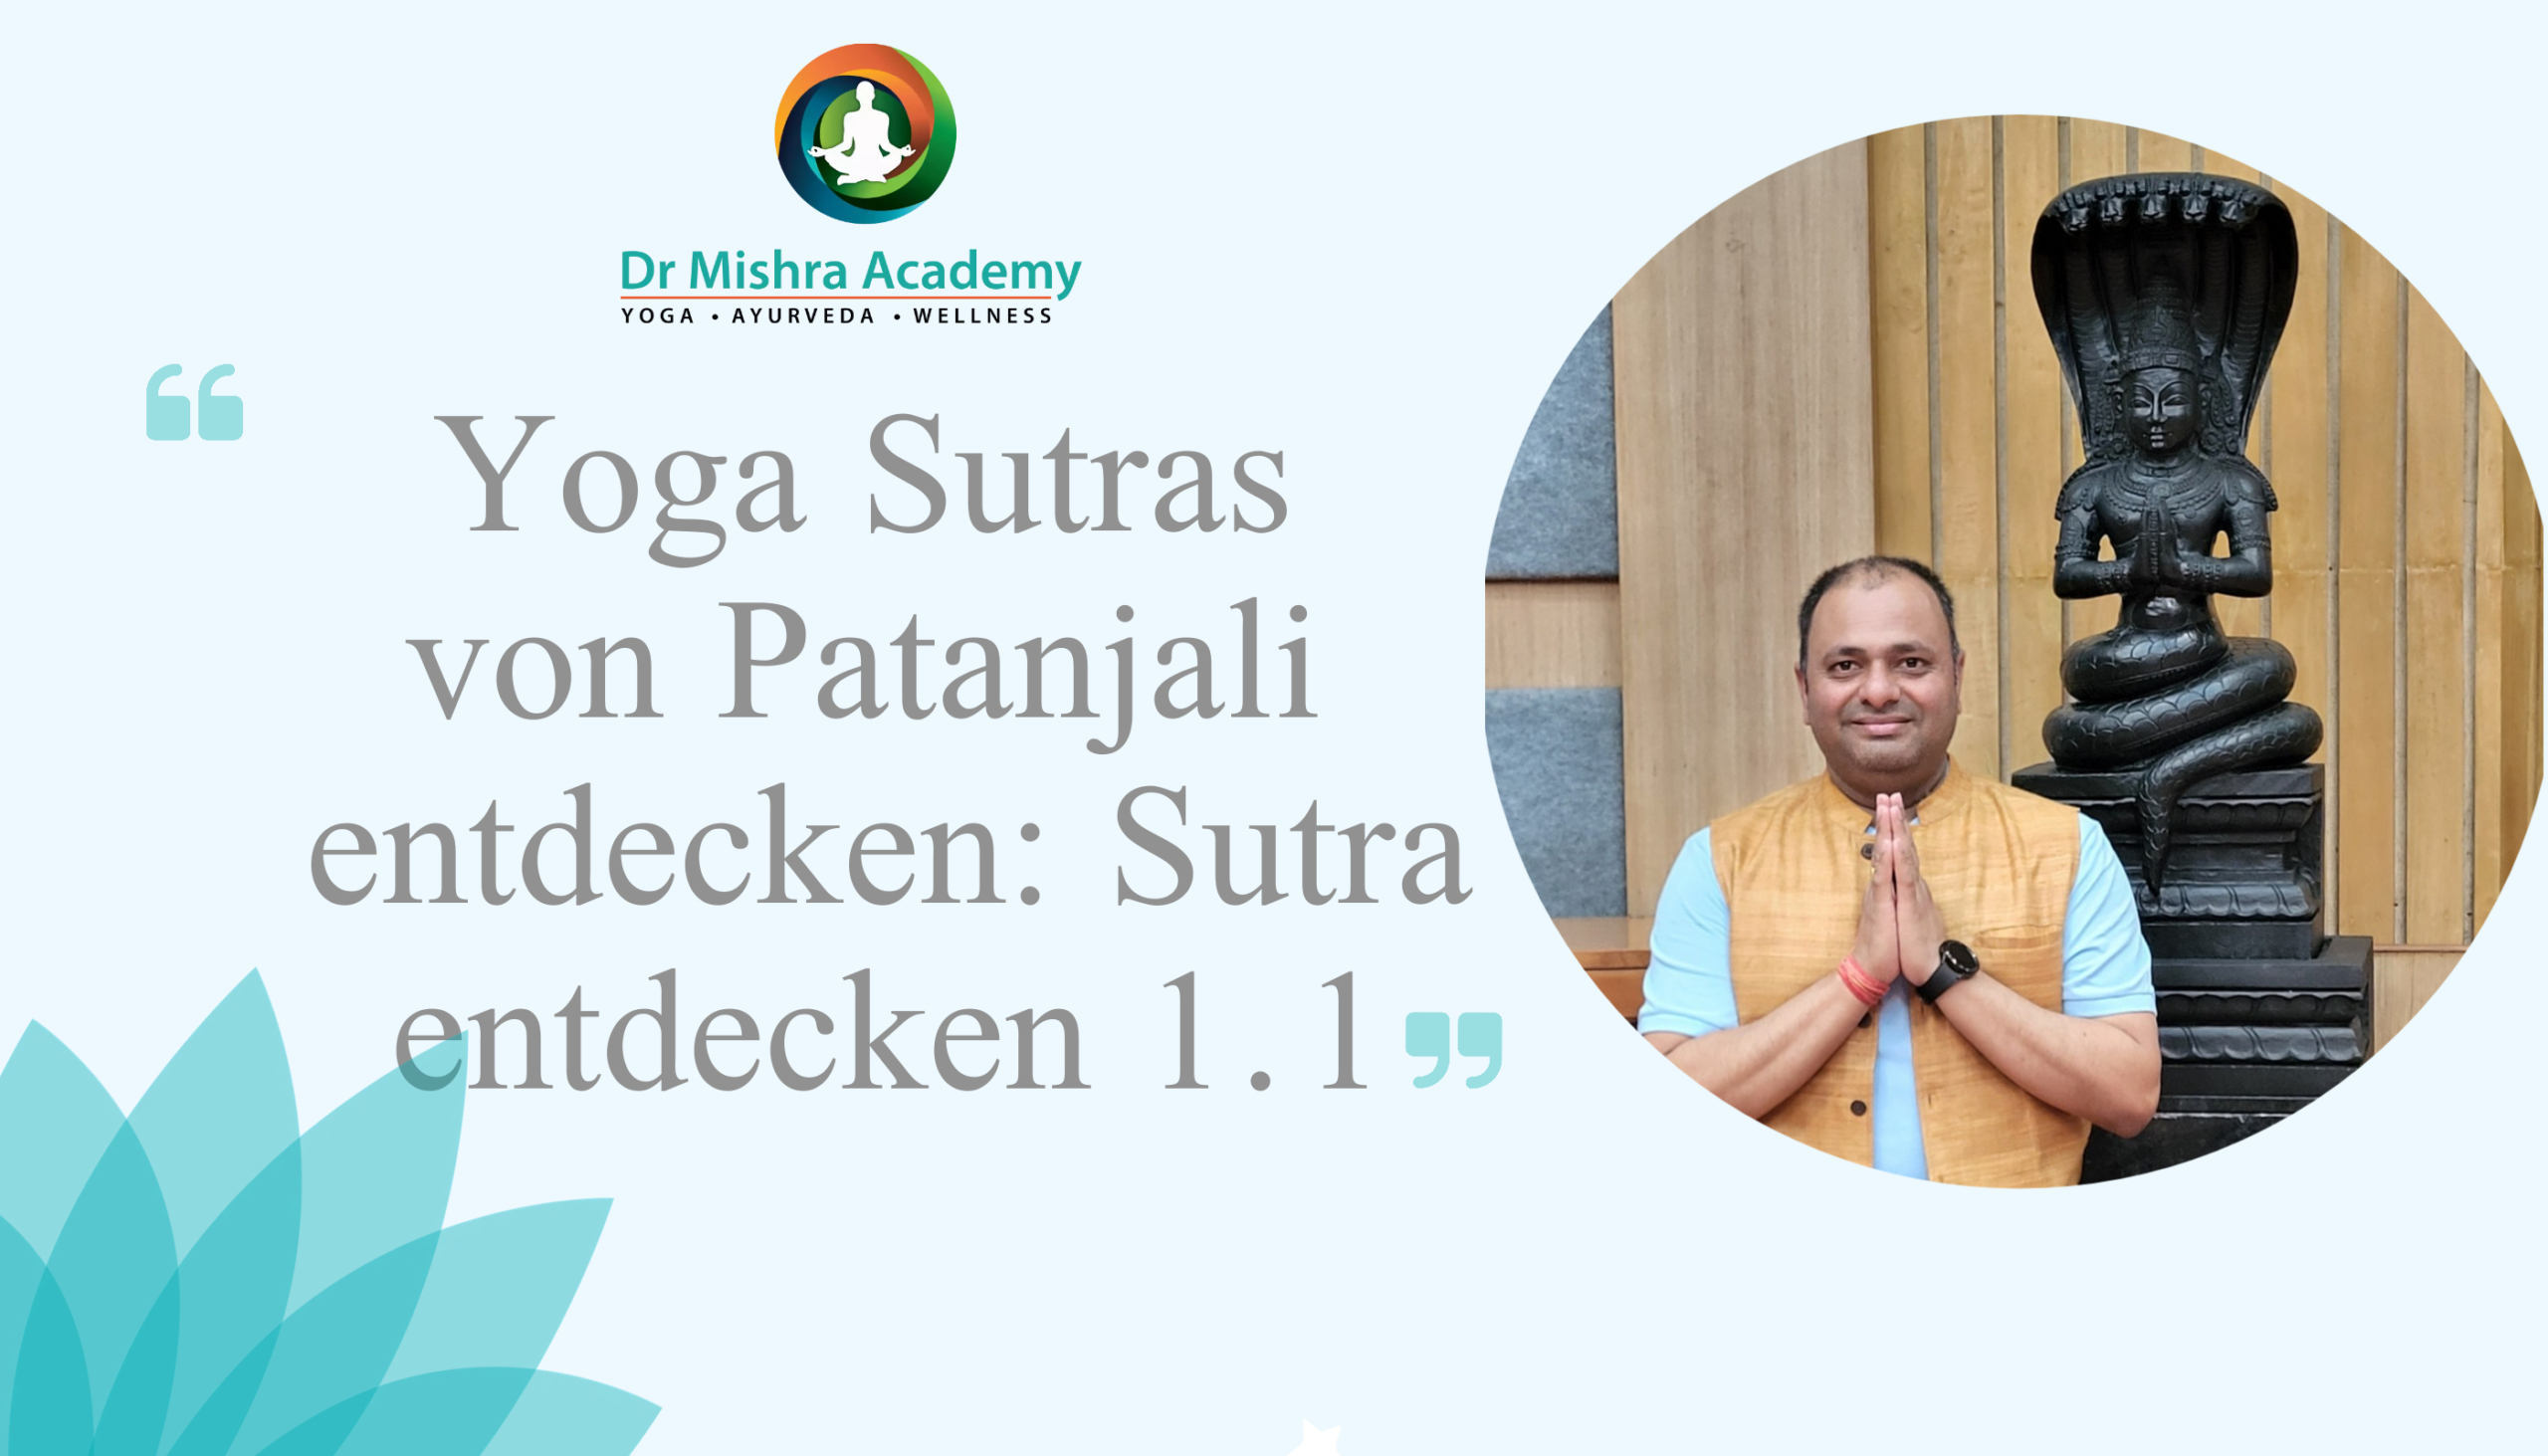 Die Yoga Sutras von Patanjali entdecken: Sutra entdecken 1.1